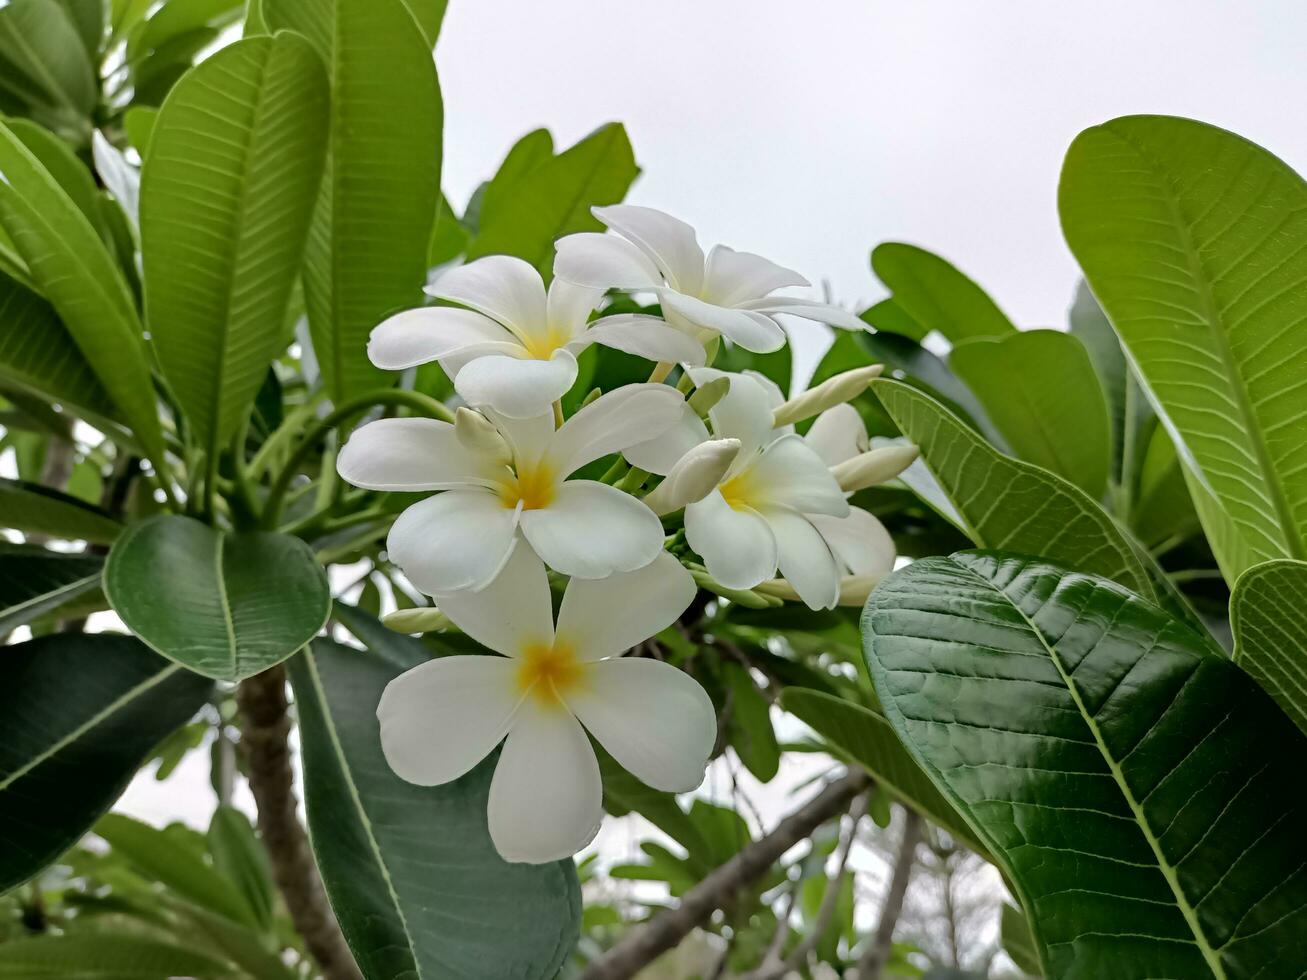 foto de flores frangipani blancas